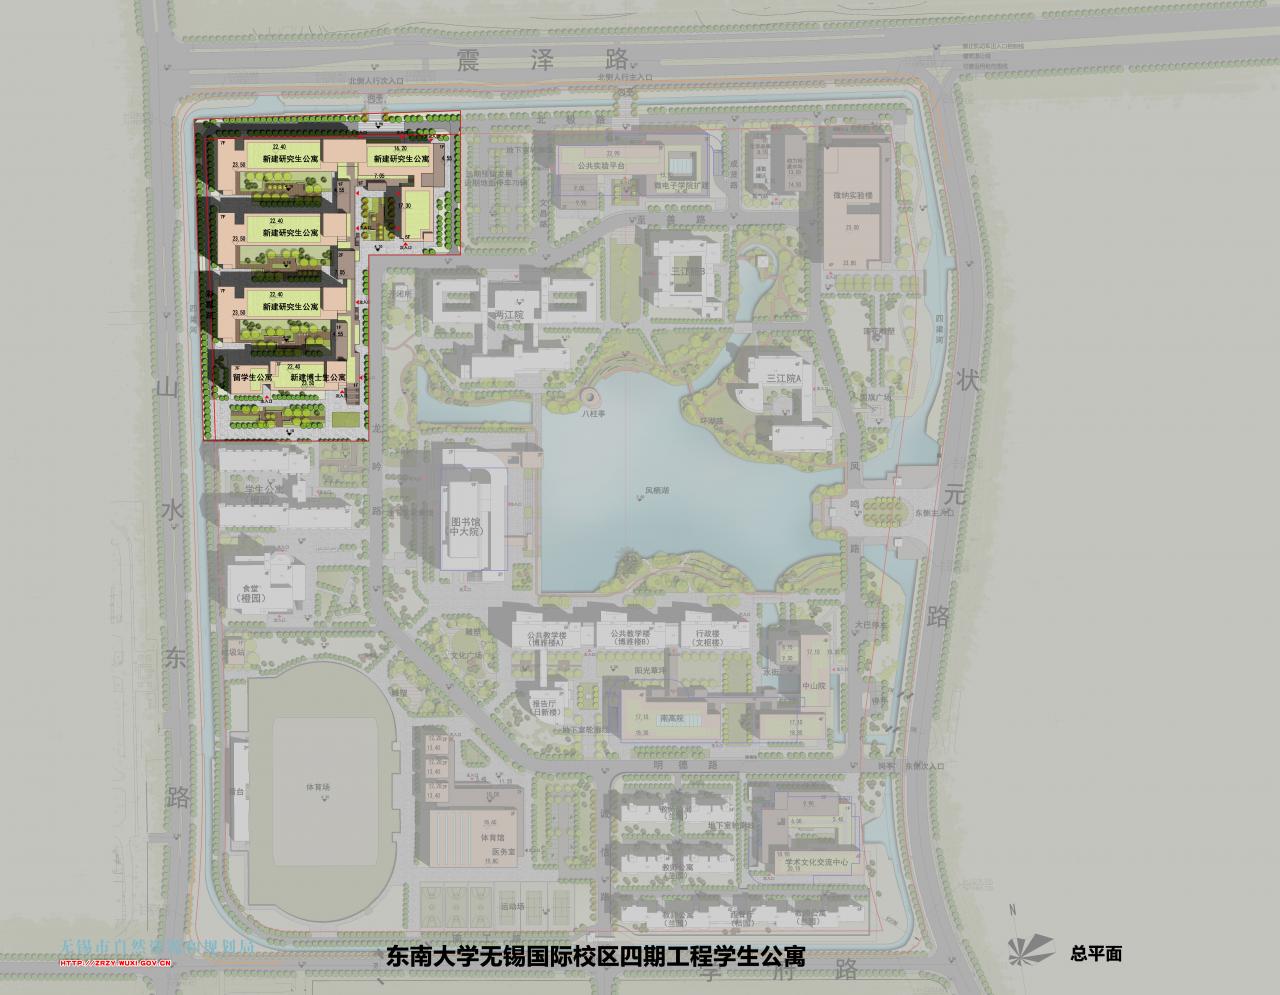 东南大学无锡国际校区 四期工程学生公寓规划（建筑）设计方案批前公示 锡房说